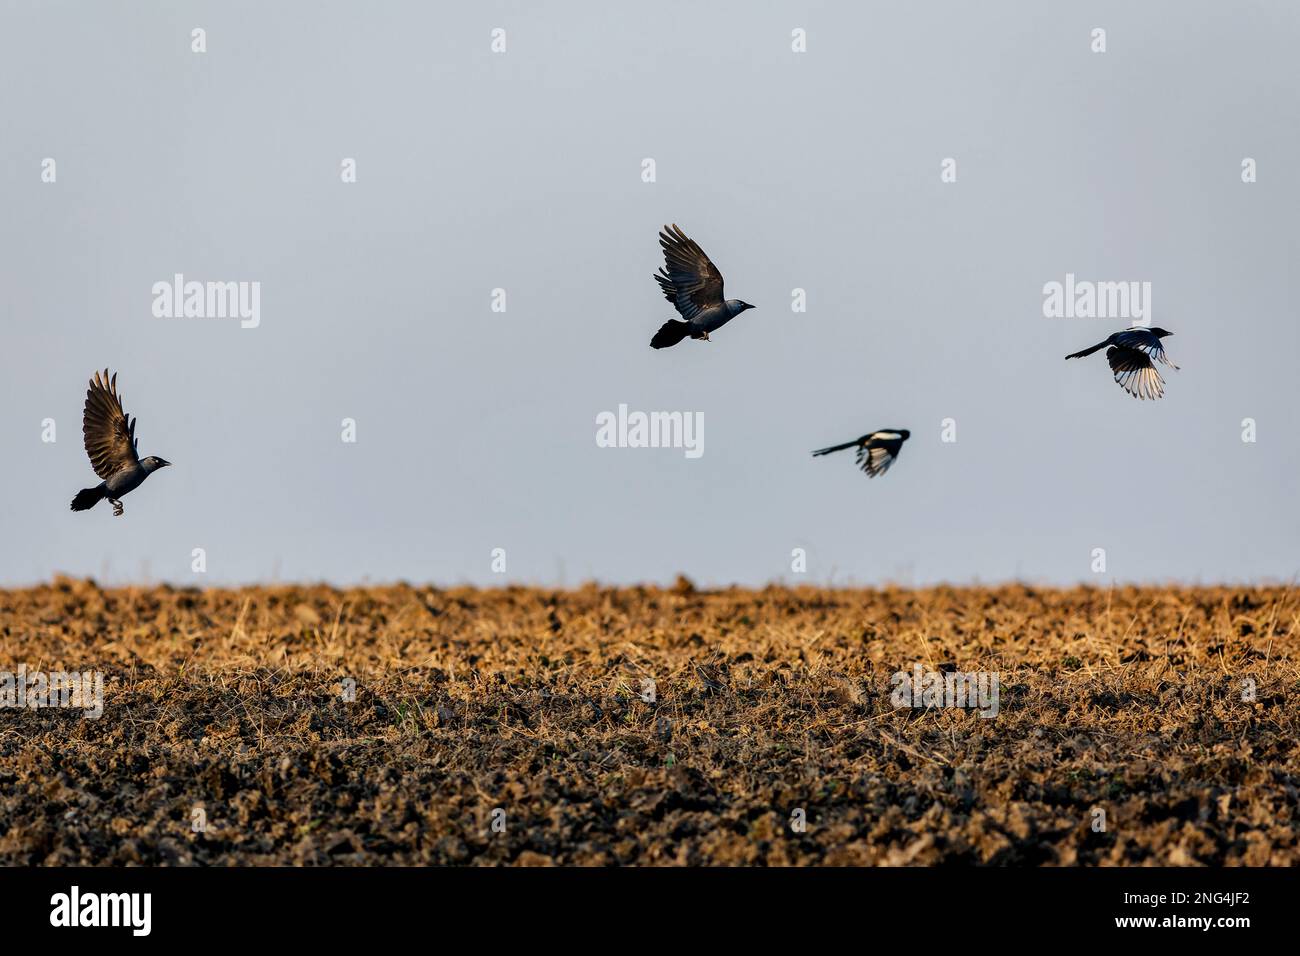 Vier Vögel, zwei eurasische Dackel und zwei schwarz-weiße Elstern, die über einem braunen gepflügten Feld fliegen. Sonniger Abend. Blauer Himmel im Hintergrund. Stockfoto